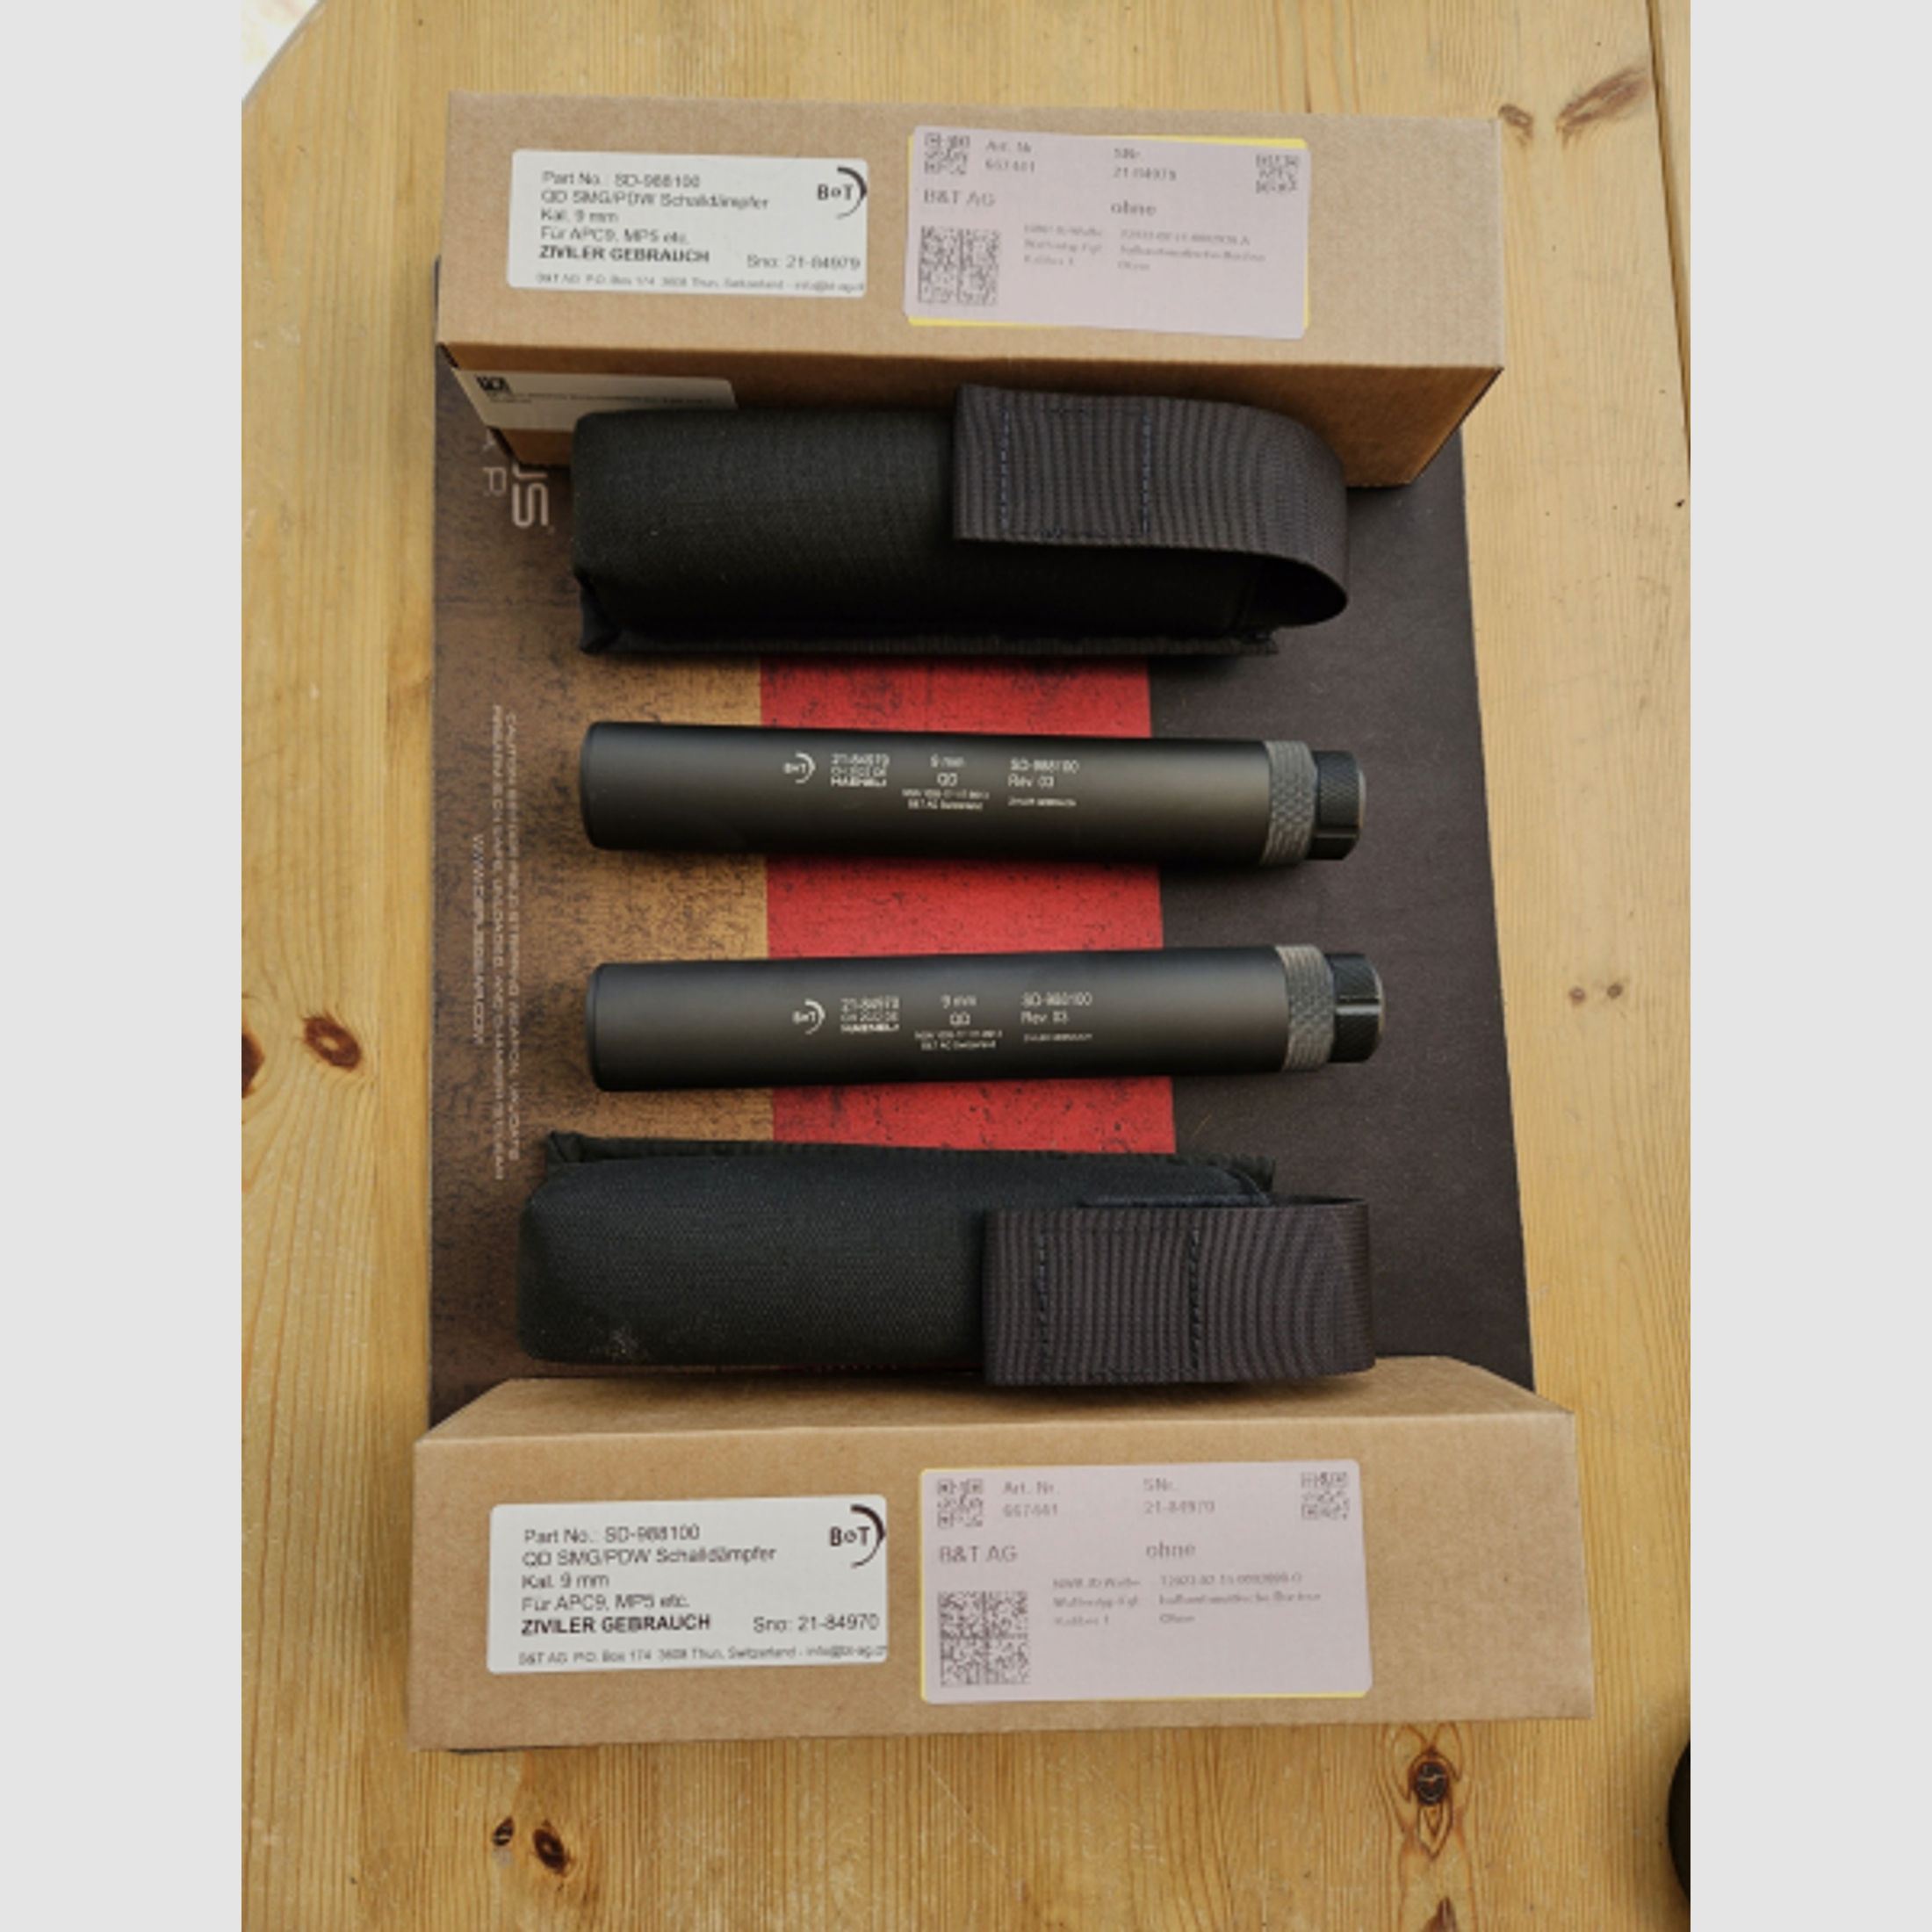 Schalldämpfer 9mm B&T QD SMG/ PDW für 3-Lug Schnittstelle Typ Heckler&Koch/H&K HK MP5,MKE T94 A2